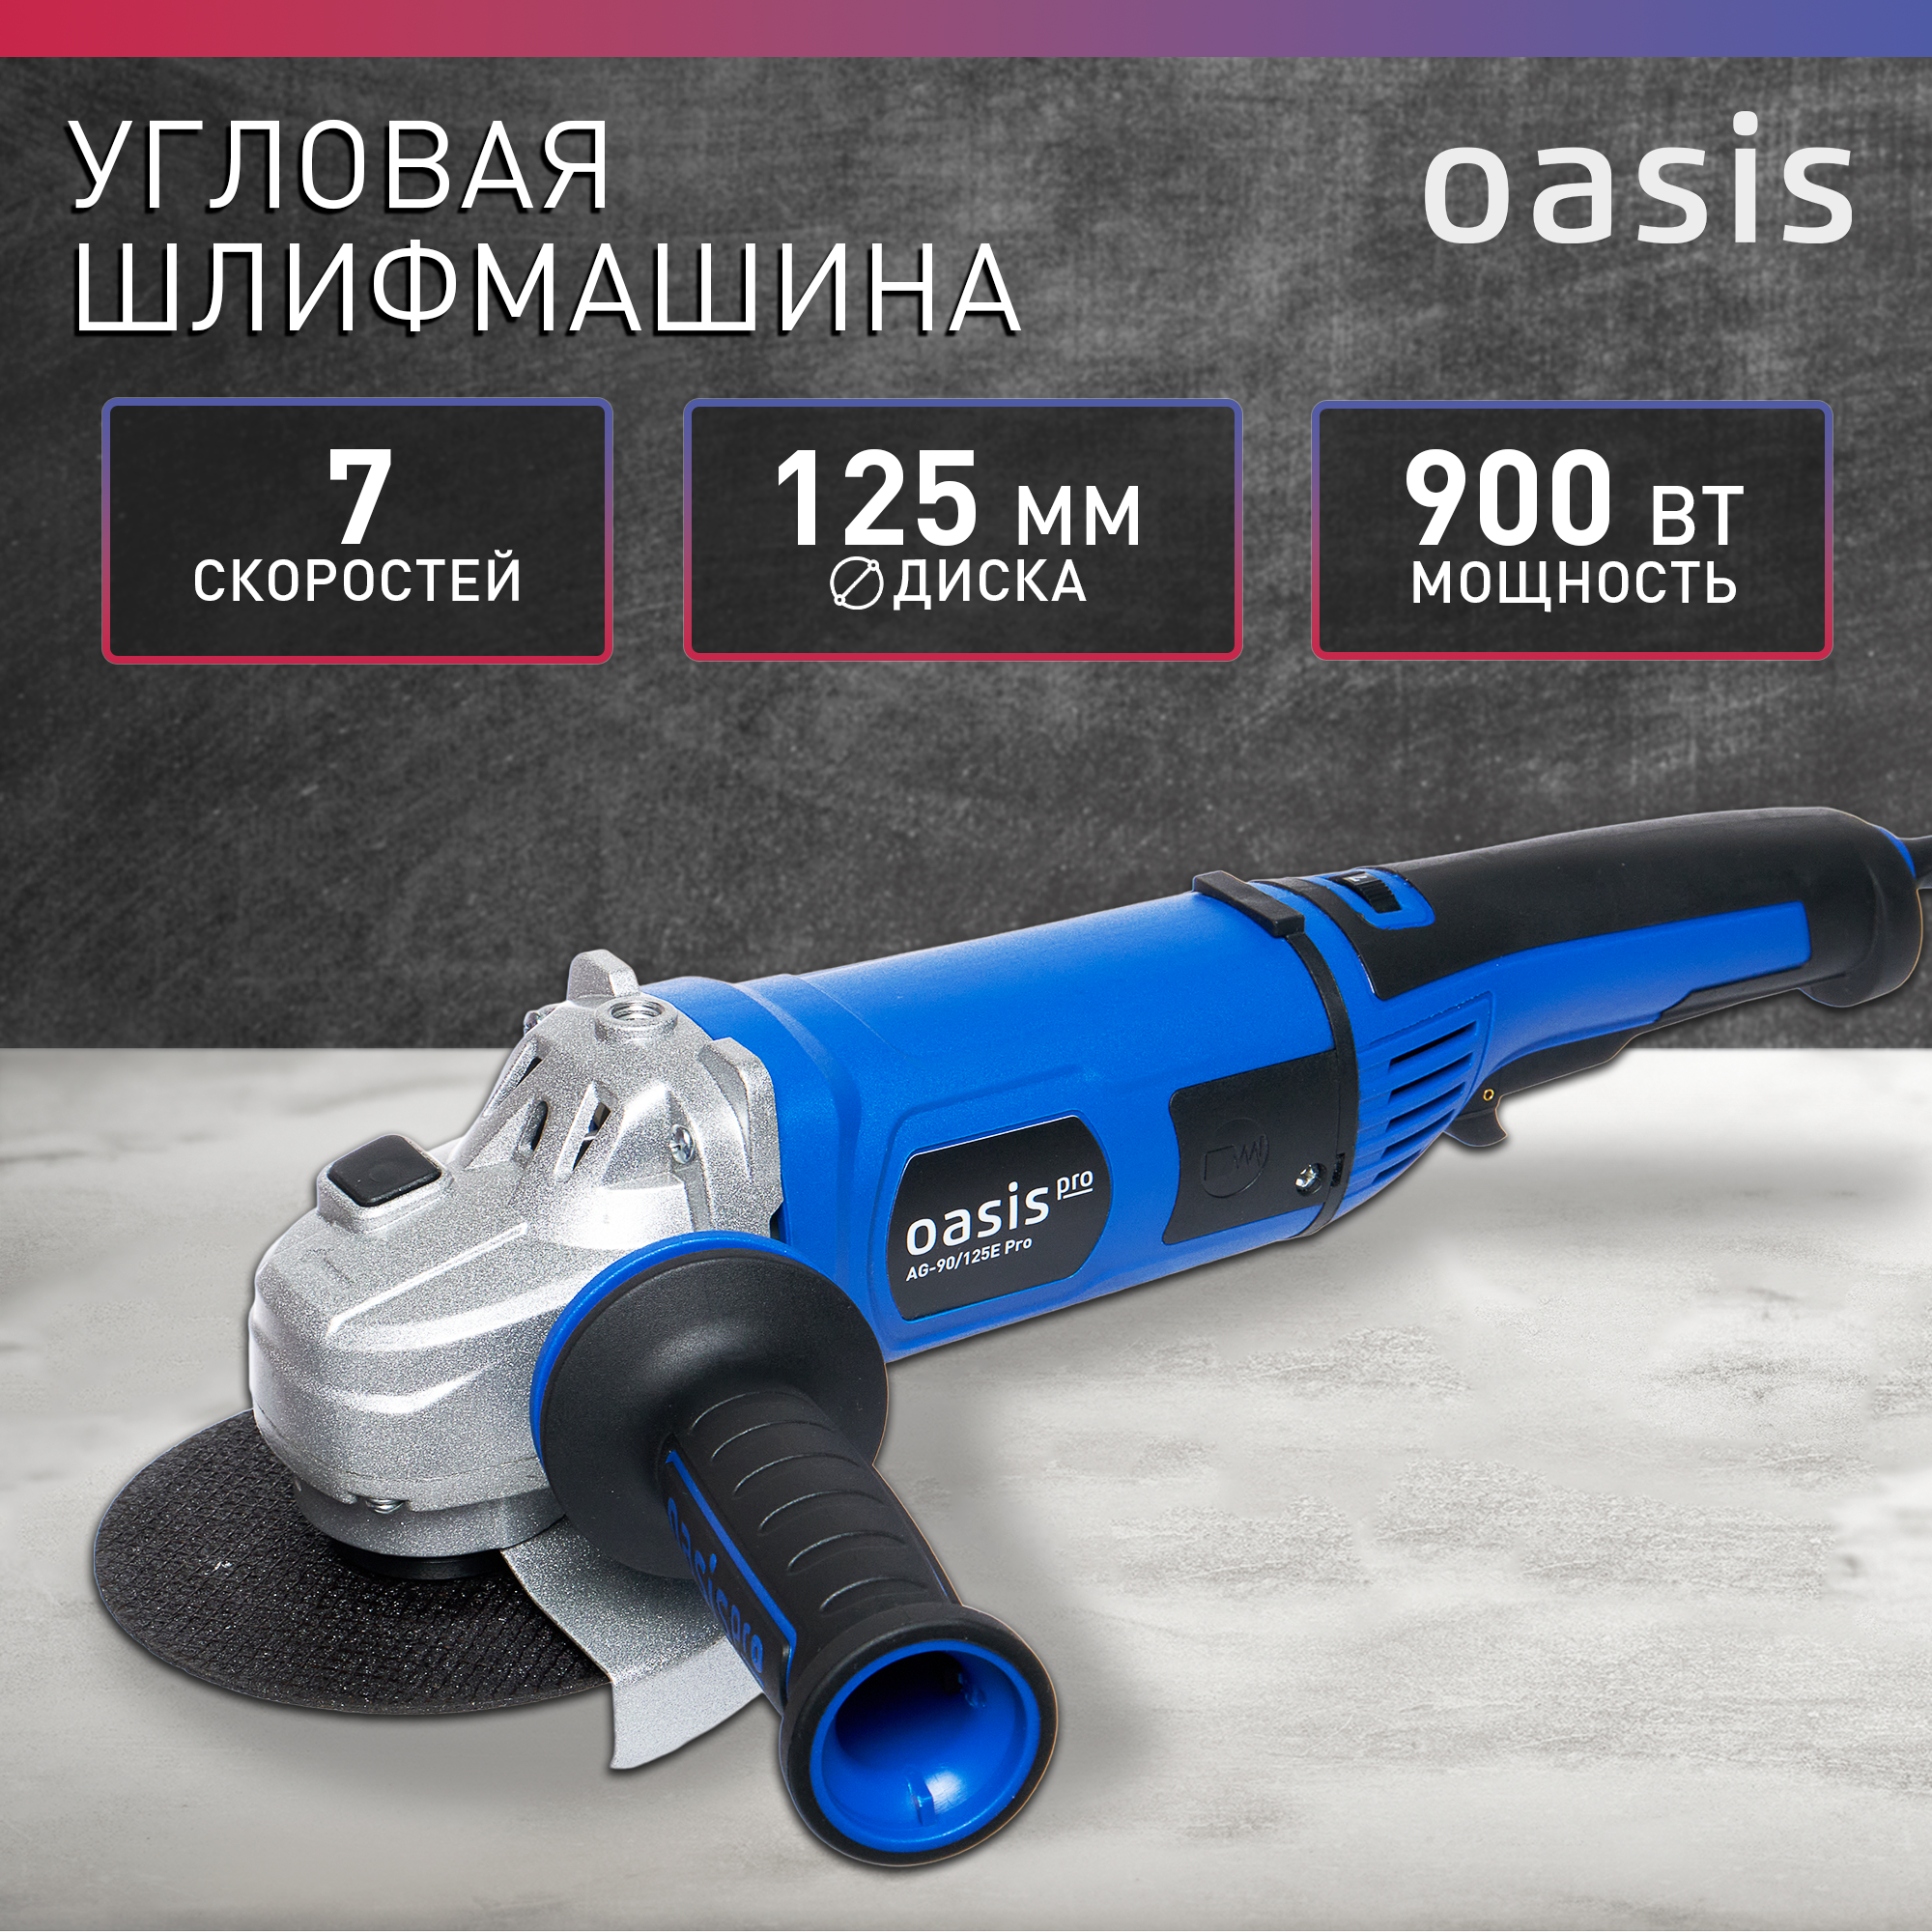 Угловая шлифмашина УШМ Oasis Pro AG-90/125E PRO